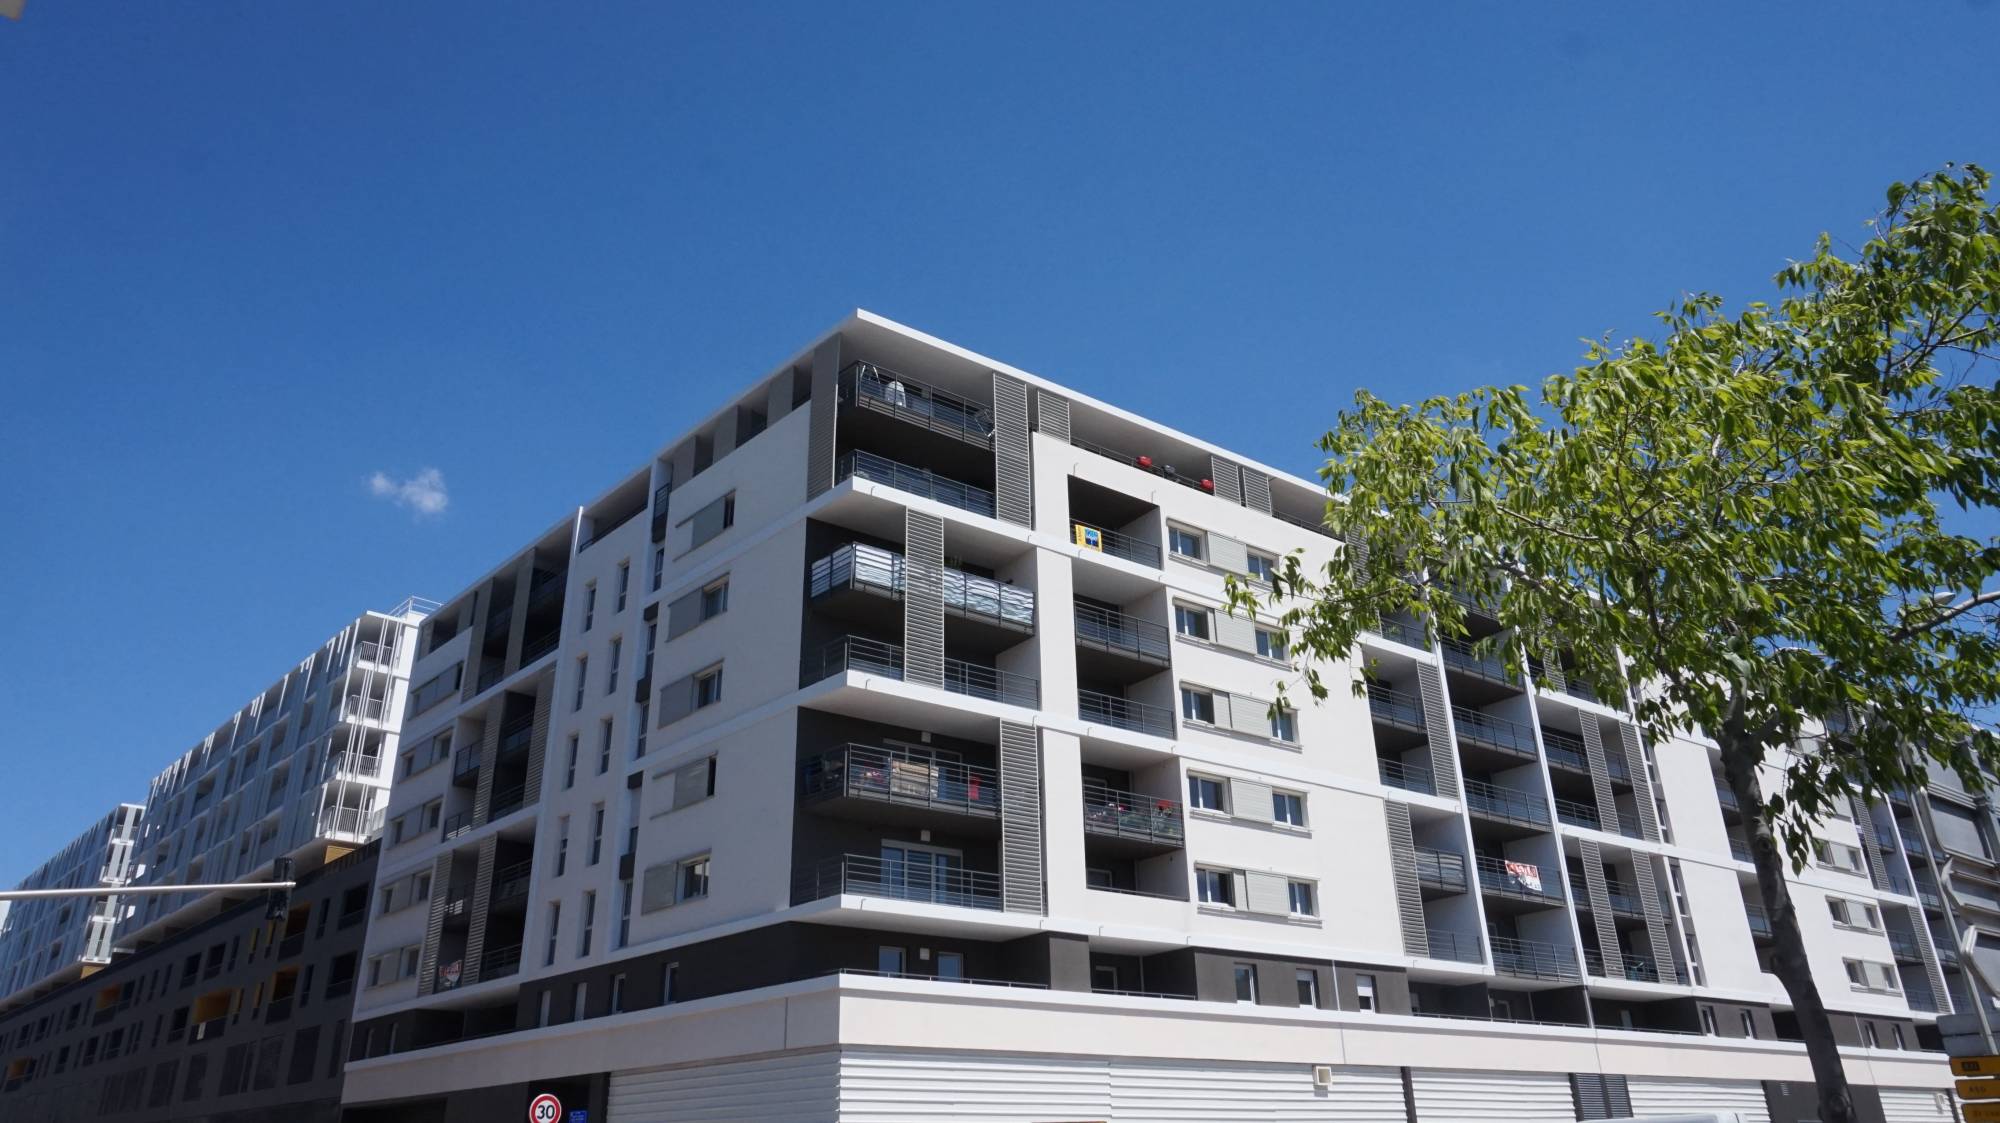 A vendre logement occupé pour investissement locatif appartement 3 pièces avec terrasse et place de parking privative Saint Loup 13010 Marseille 